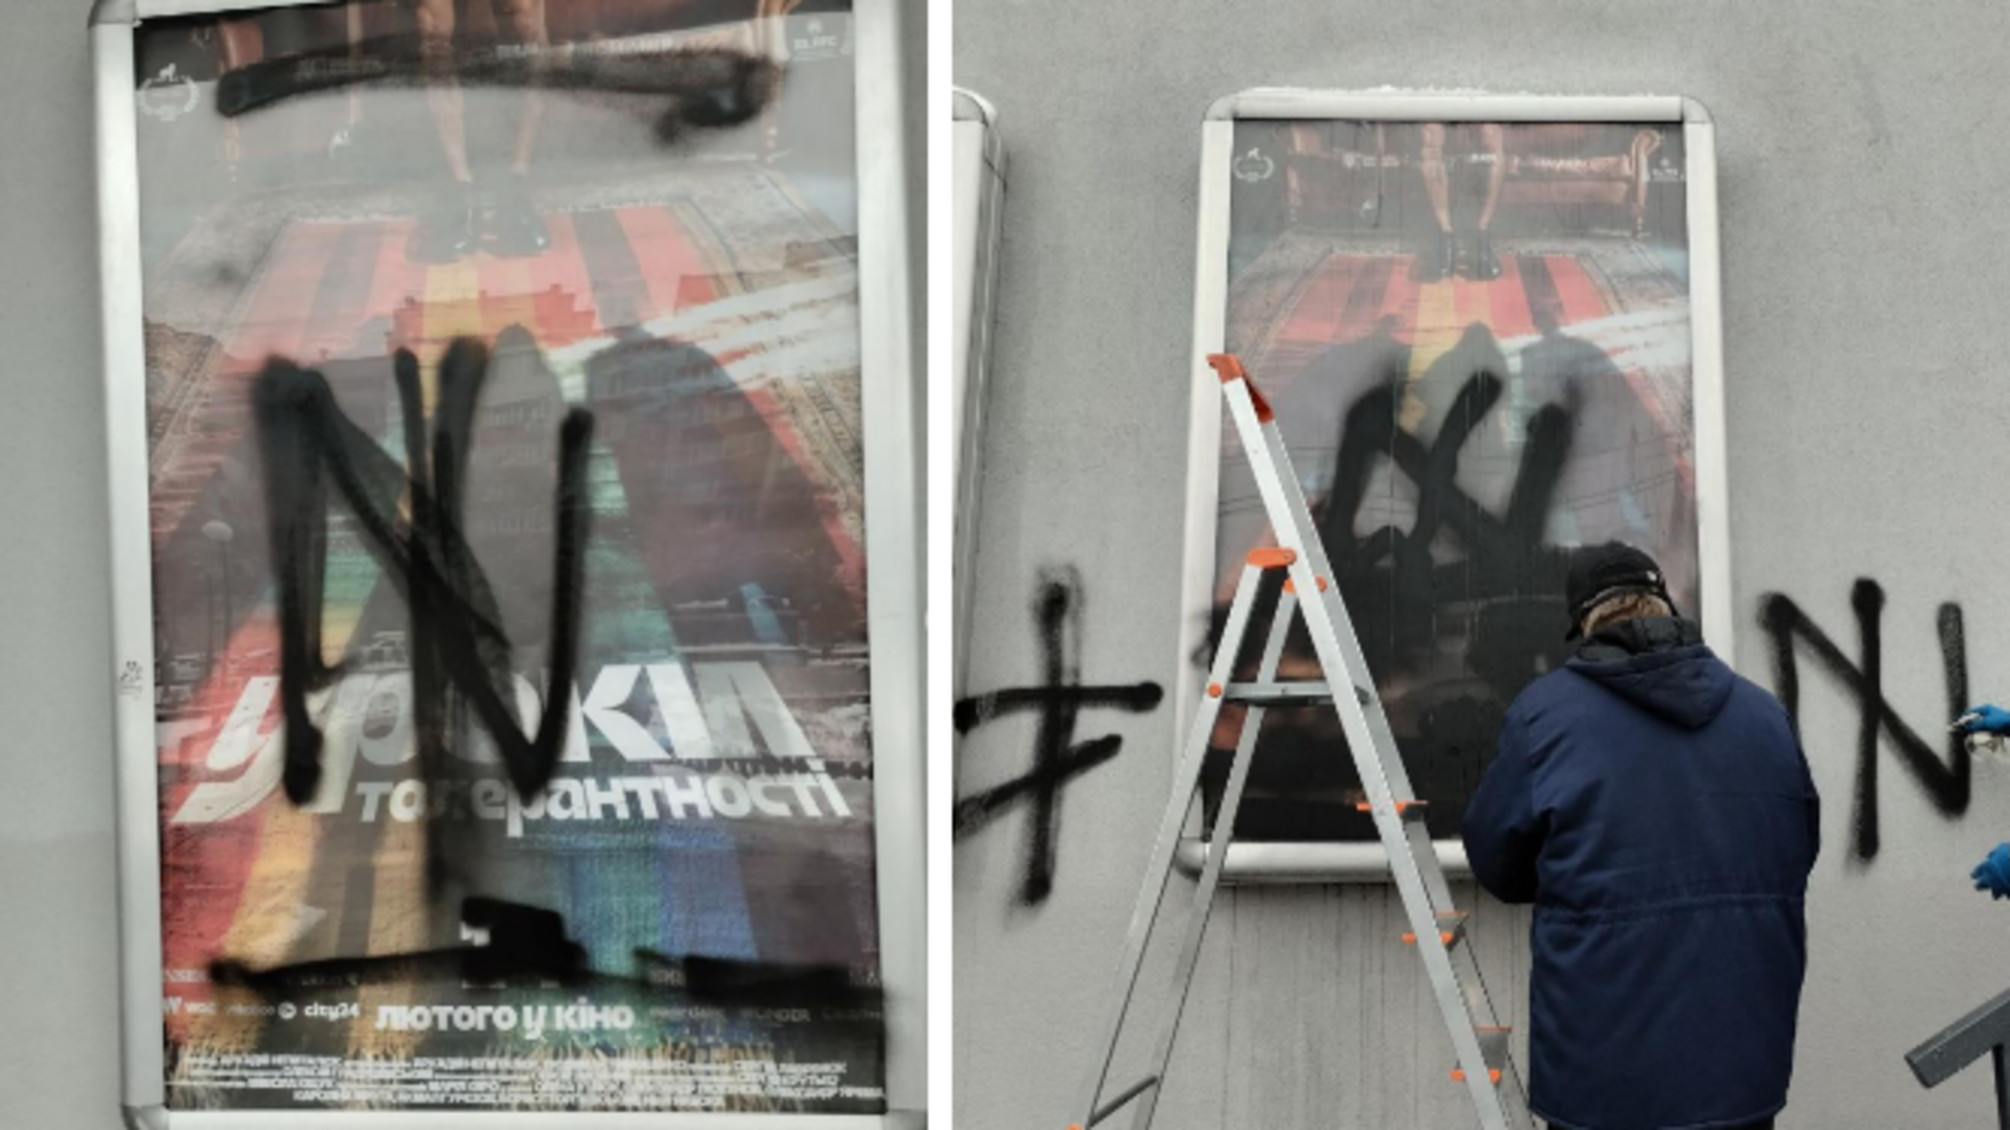 Неизвестные закрасили фасад и ситилайты кинотеатра 'Октябрьский' чере показ фильма 'Уроки толерантности' о ЛГБТ-сообществе